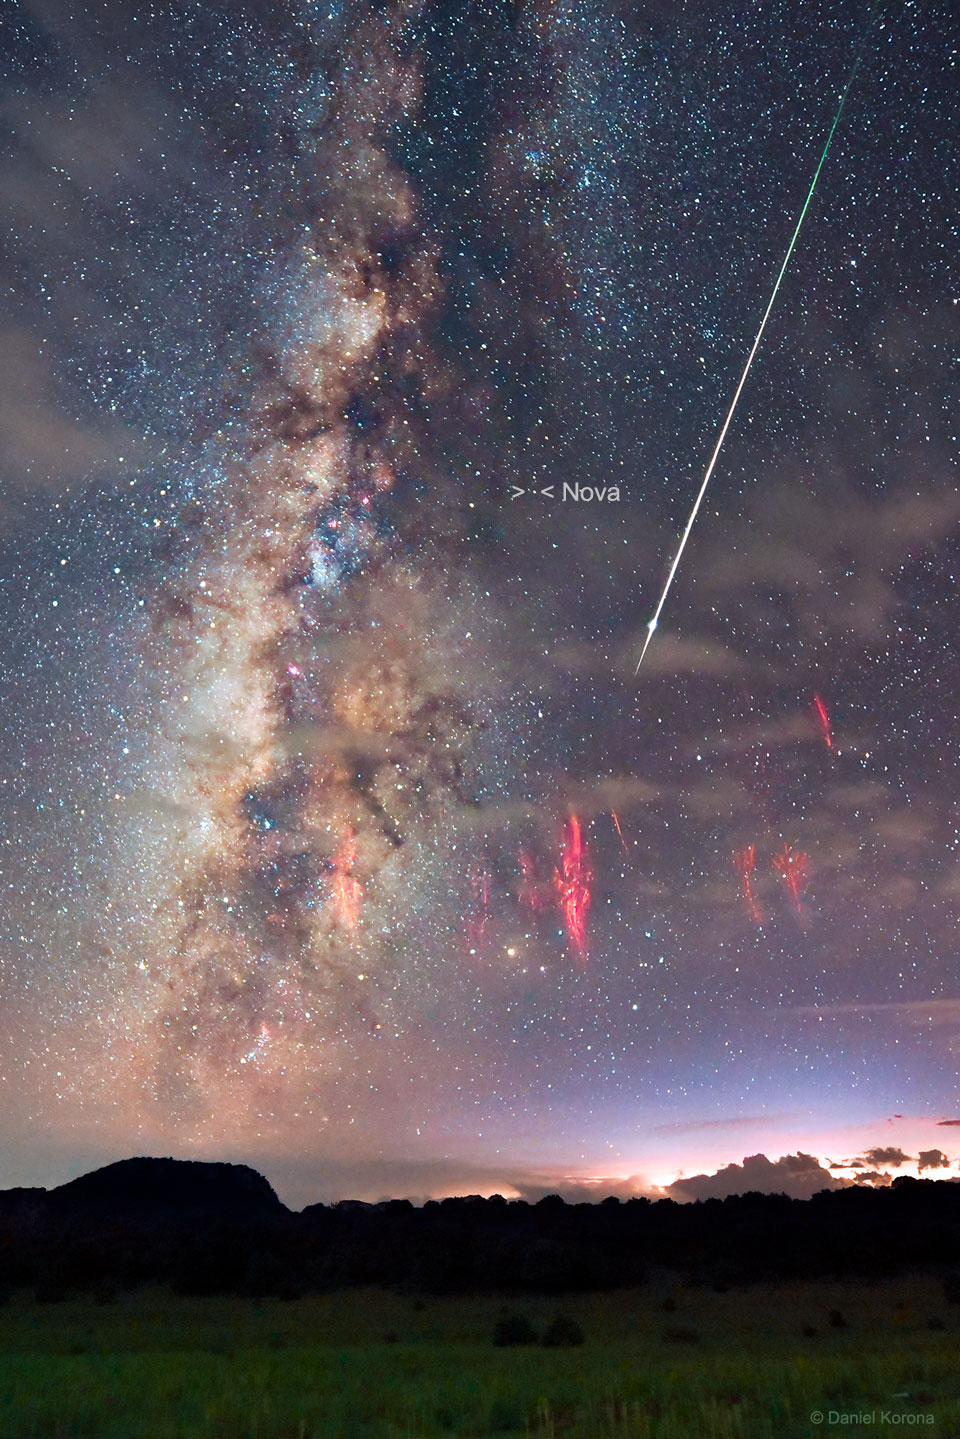 Himmel über Zacatecas in Mexiko mit Perseiden-Meteor, Milchstraße, Roten Kobolden und Nova RS Ophiuchi.